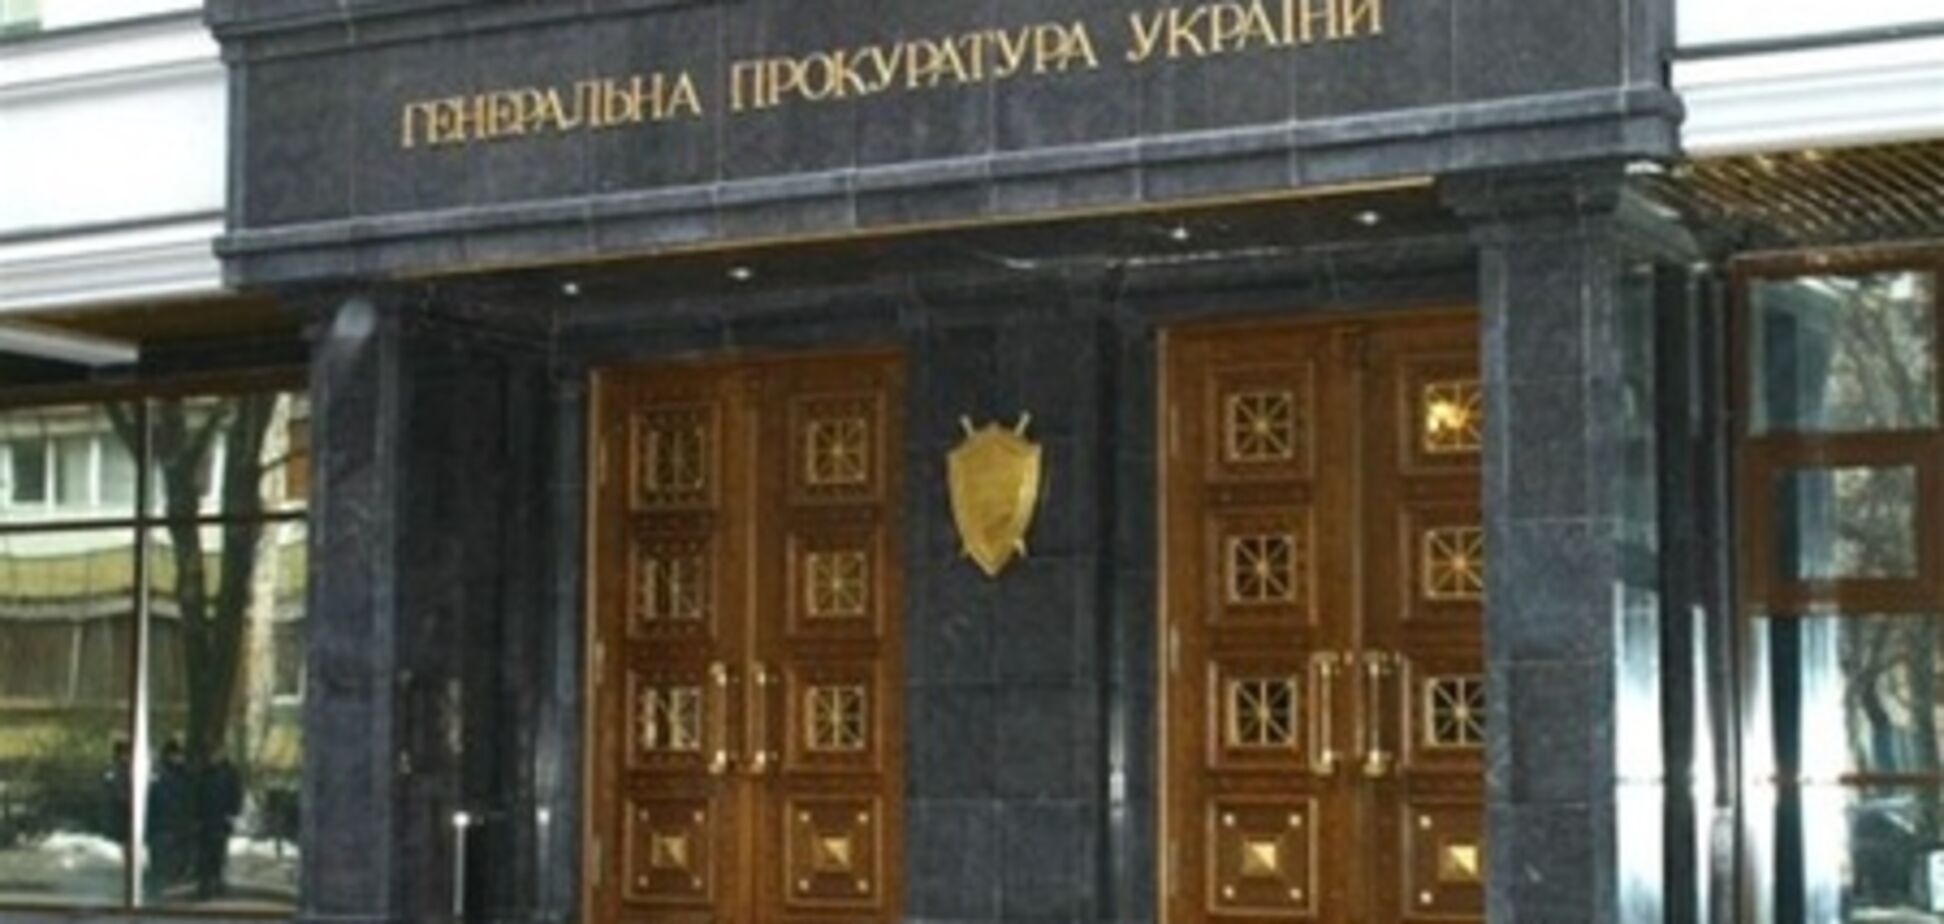 Адвокат Сирый трое суток не прикасался к делу Тимошенко, - ГПУ